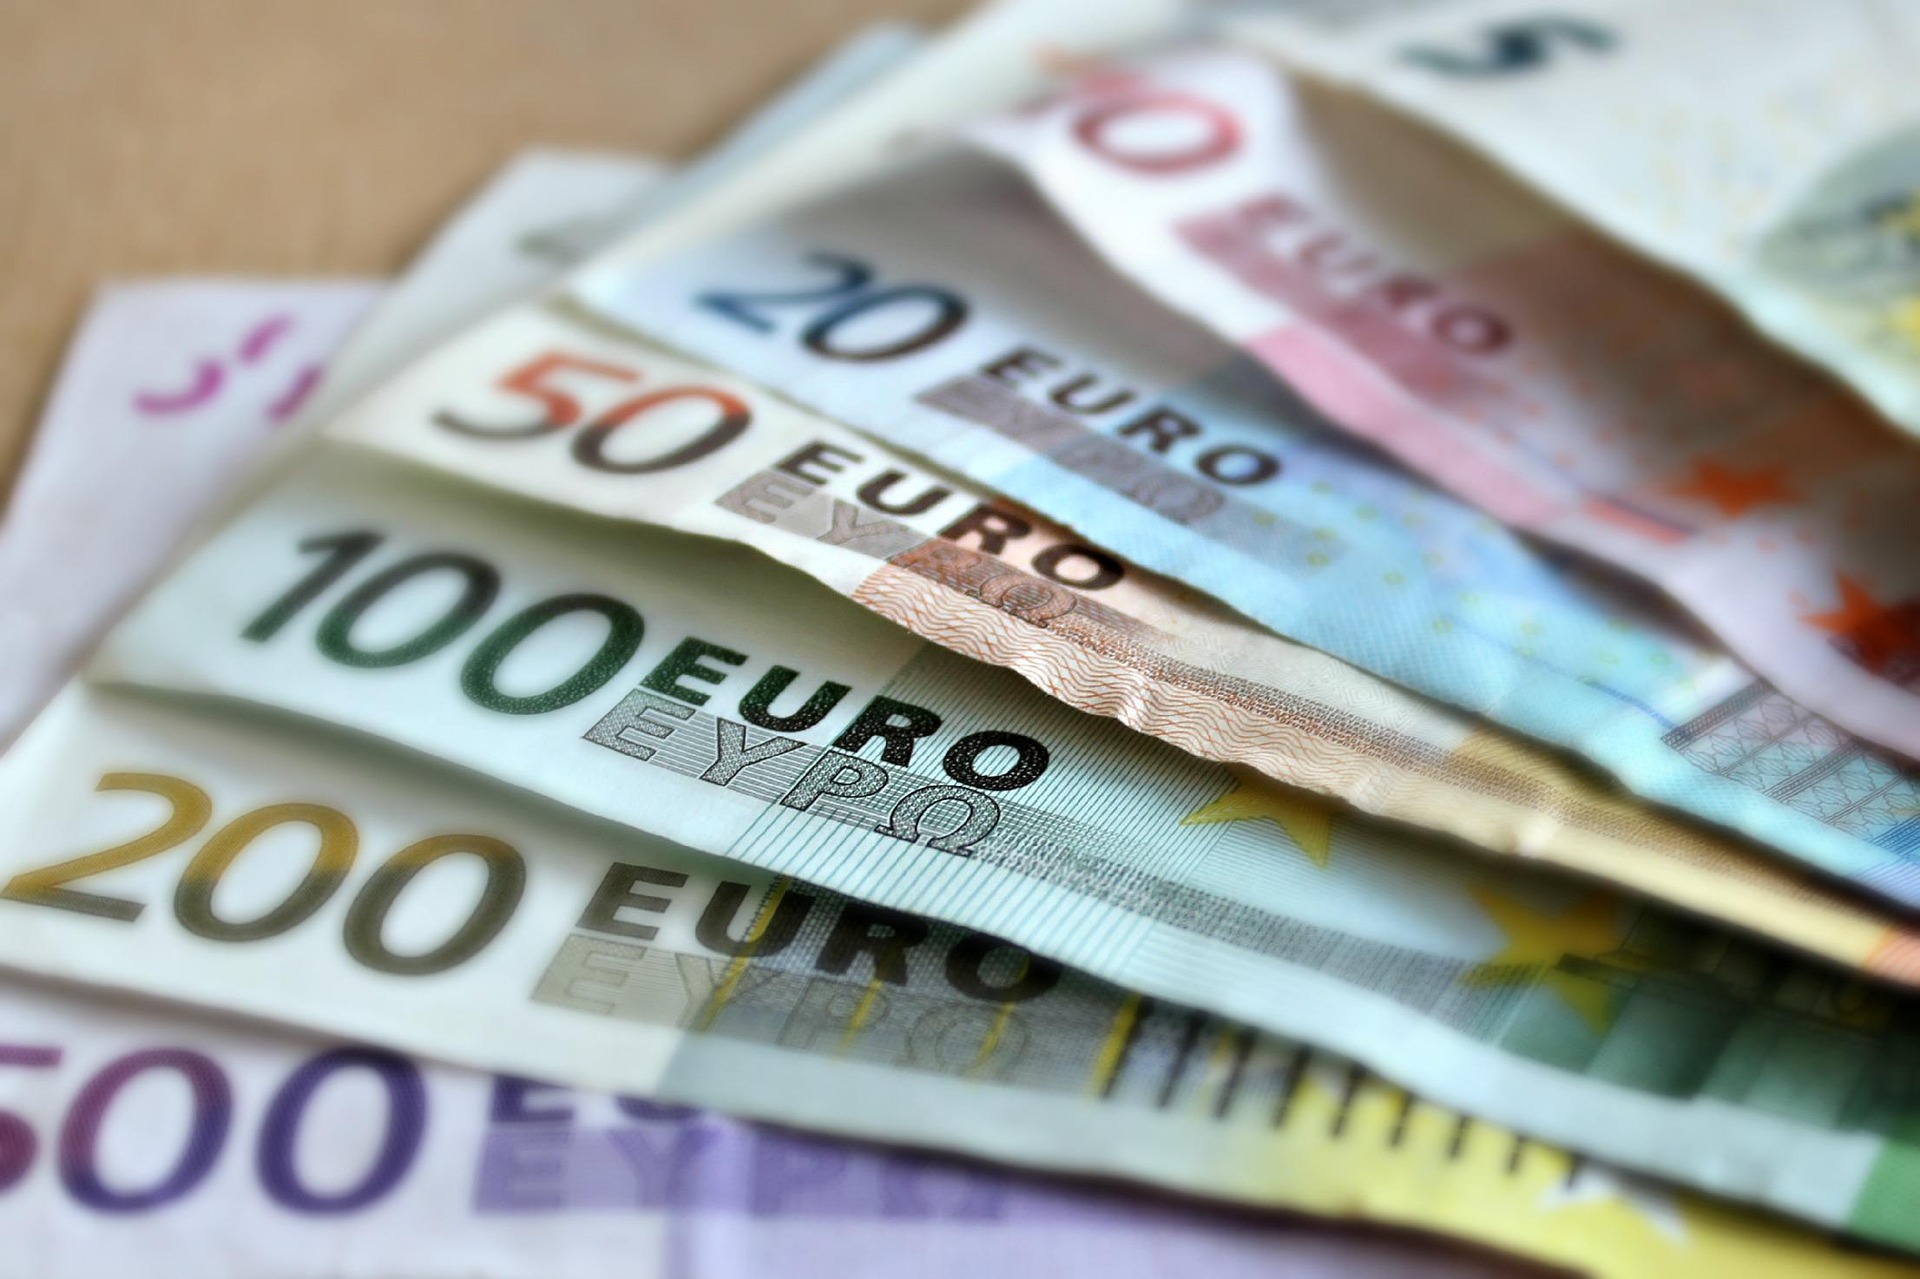 Θύμα εξαπάτησης έπεσε άντρας στη Ρόδο - Φίλος του «έφαγε» 61.000 ευρώ